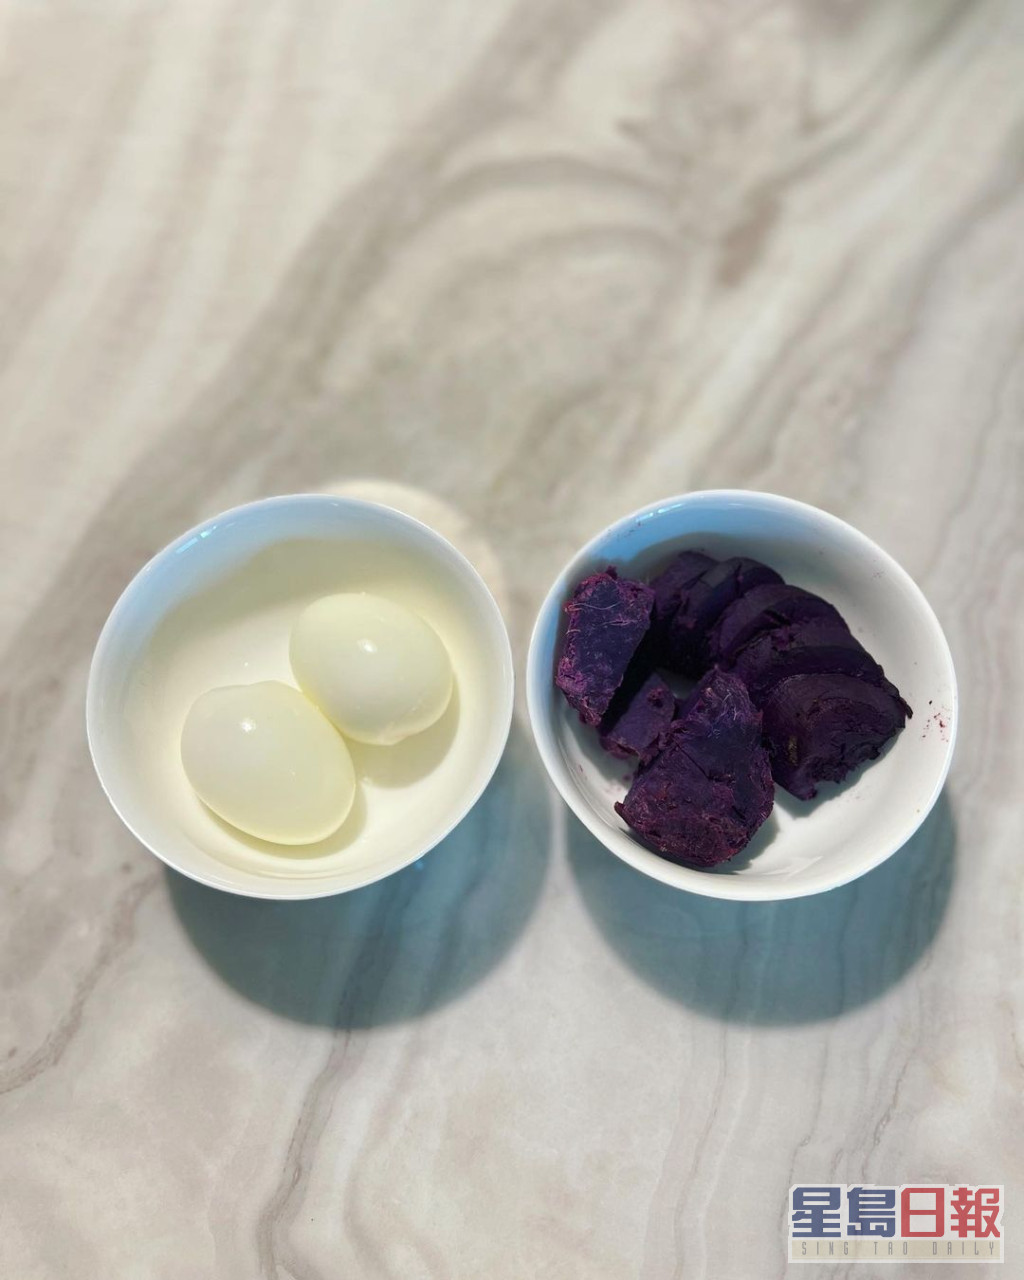 最近爱上紫薯加鸡蛋。